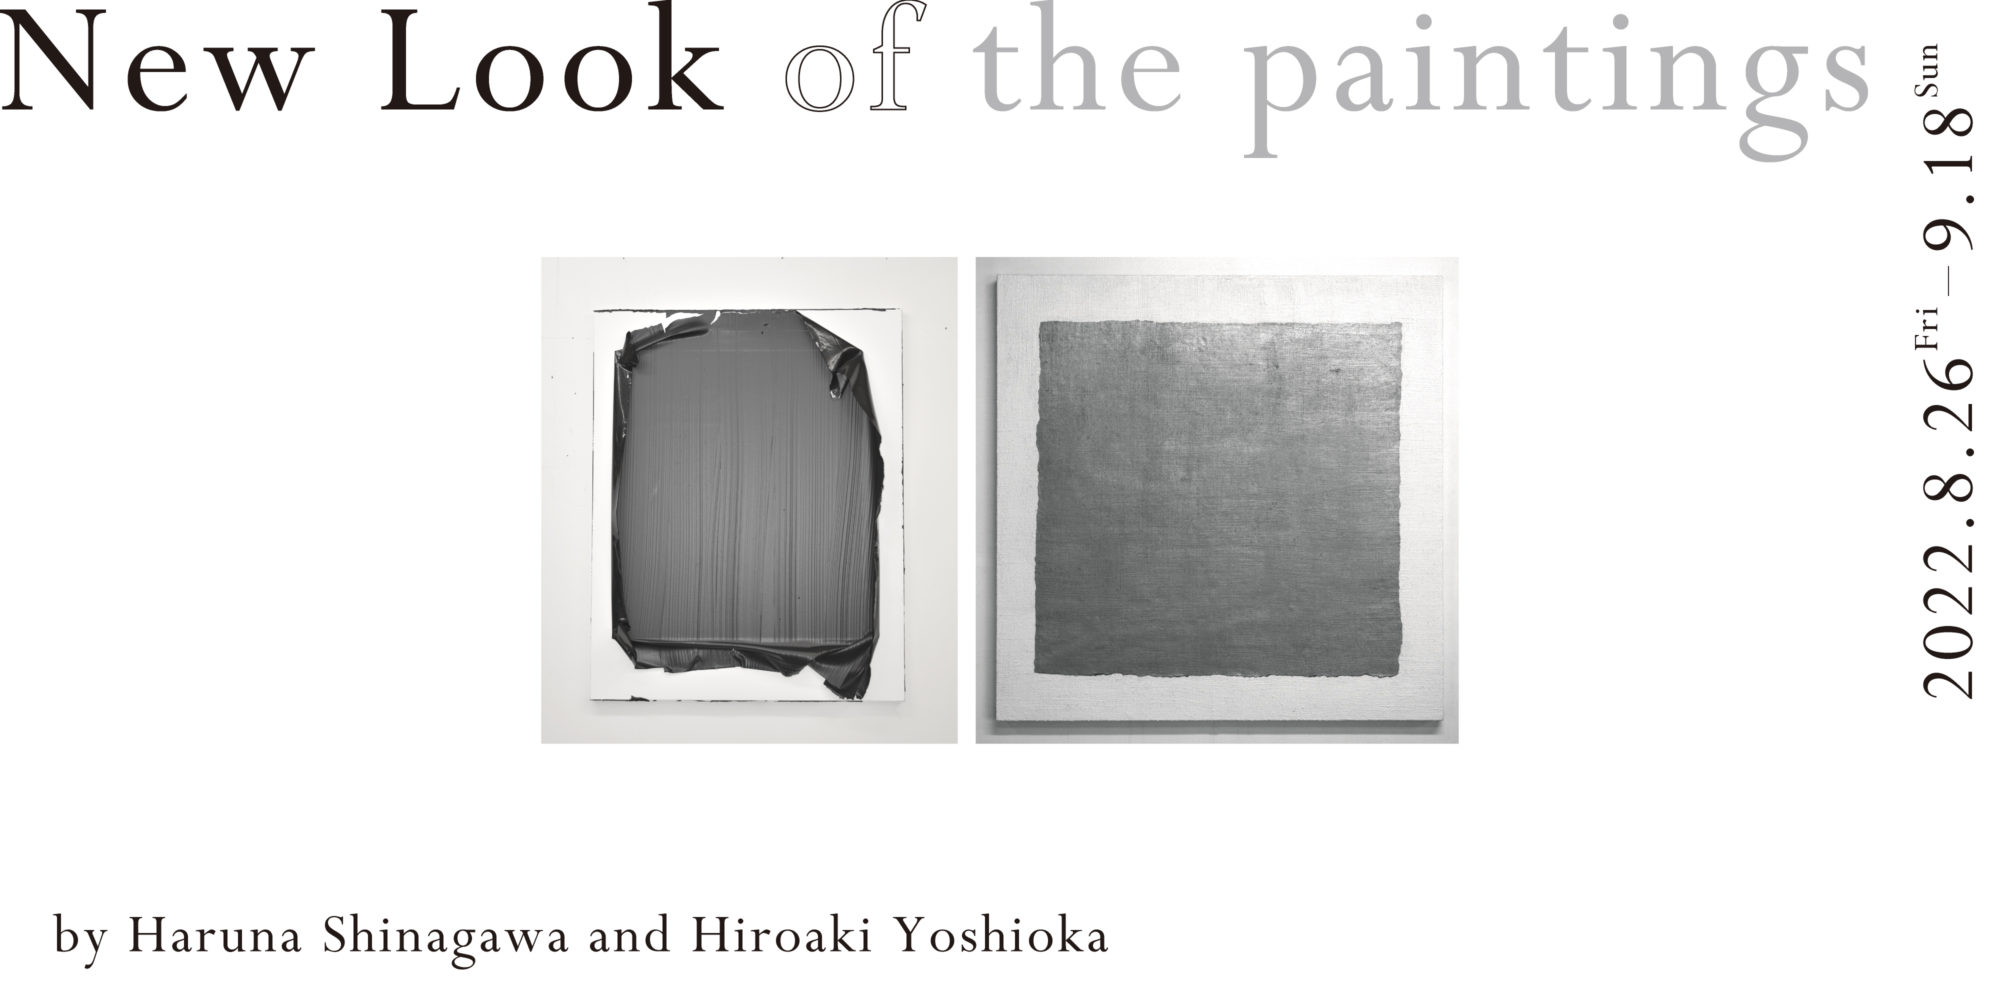 New Look of the paintings by Haruna Shinagawa and Hiroaki Yoshioka